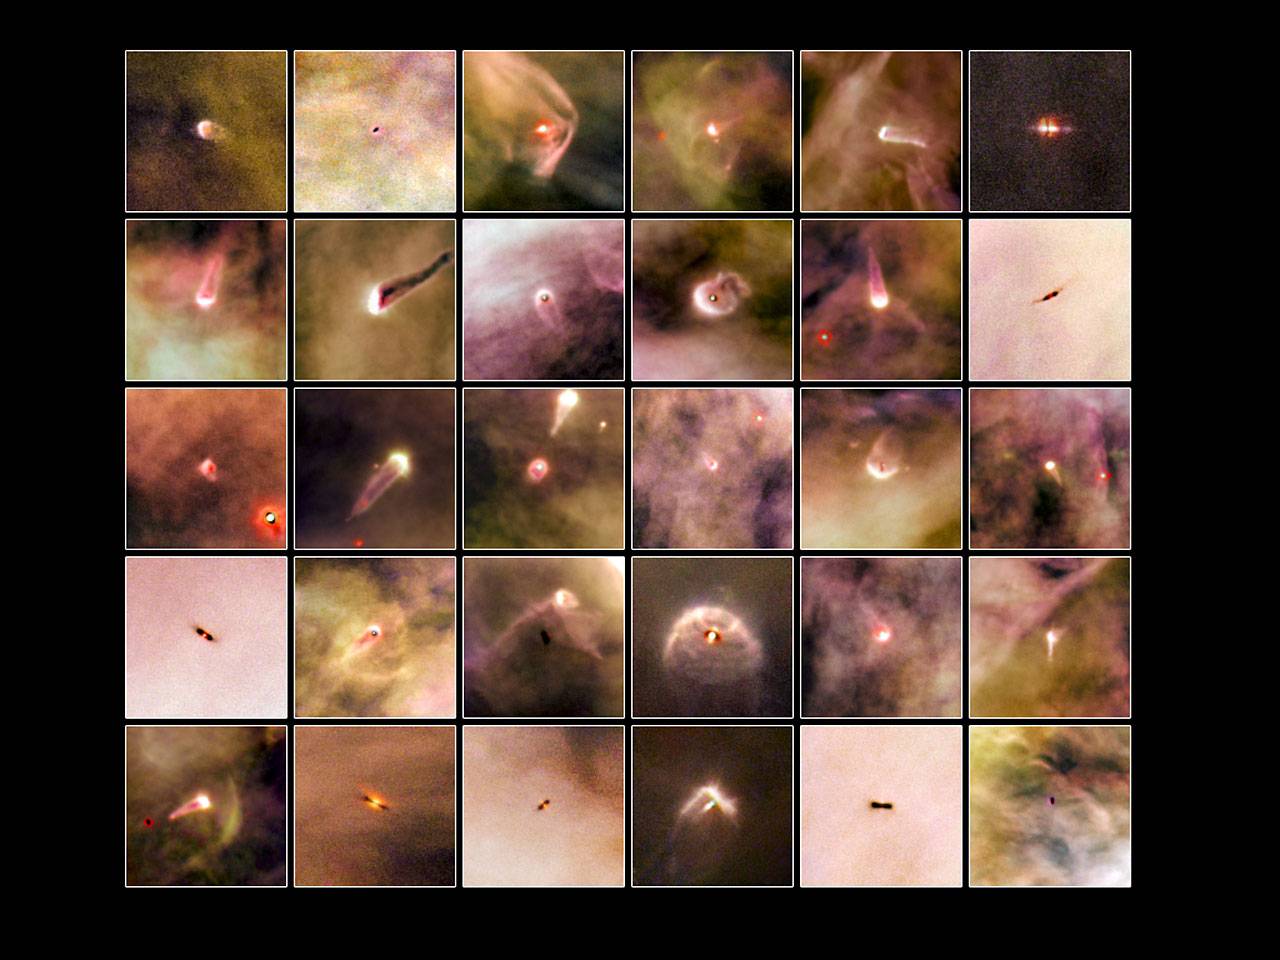 Descubren 42 discos protoplanetarios en la Nebulosa de Orión